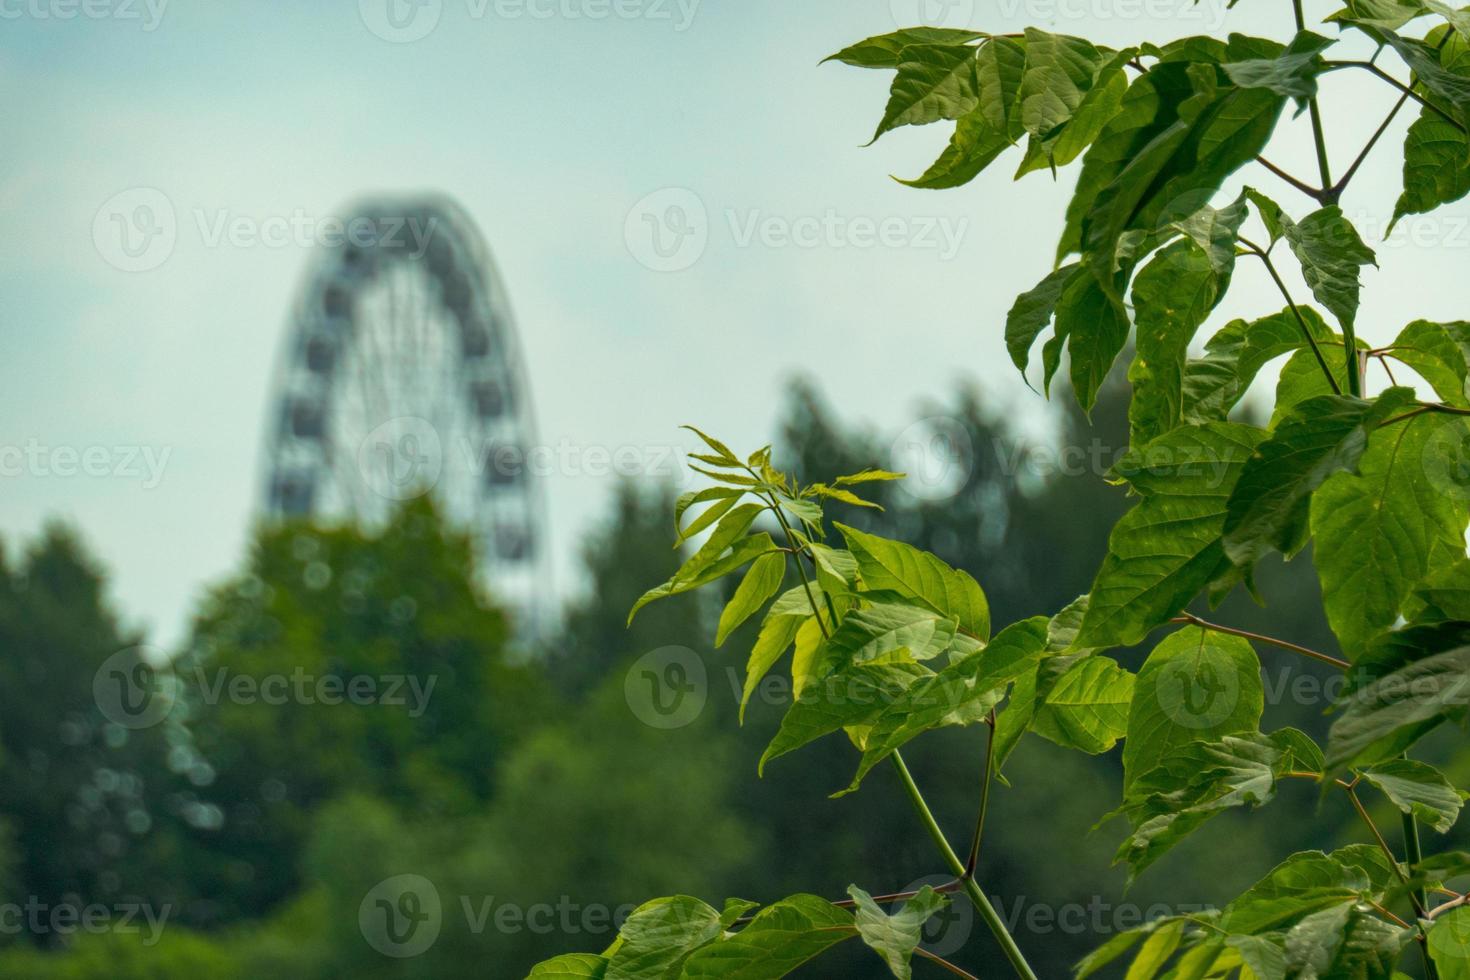 paisagem de um parque de diversões com o topo de uma roda gigante mostrando acima das copas das árvores contra um céu azul. foto